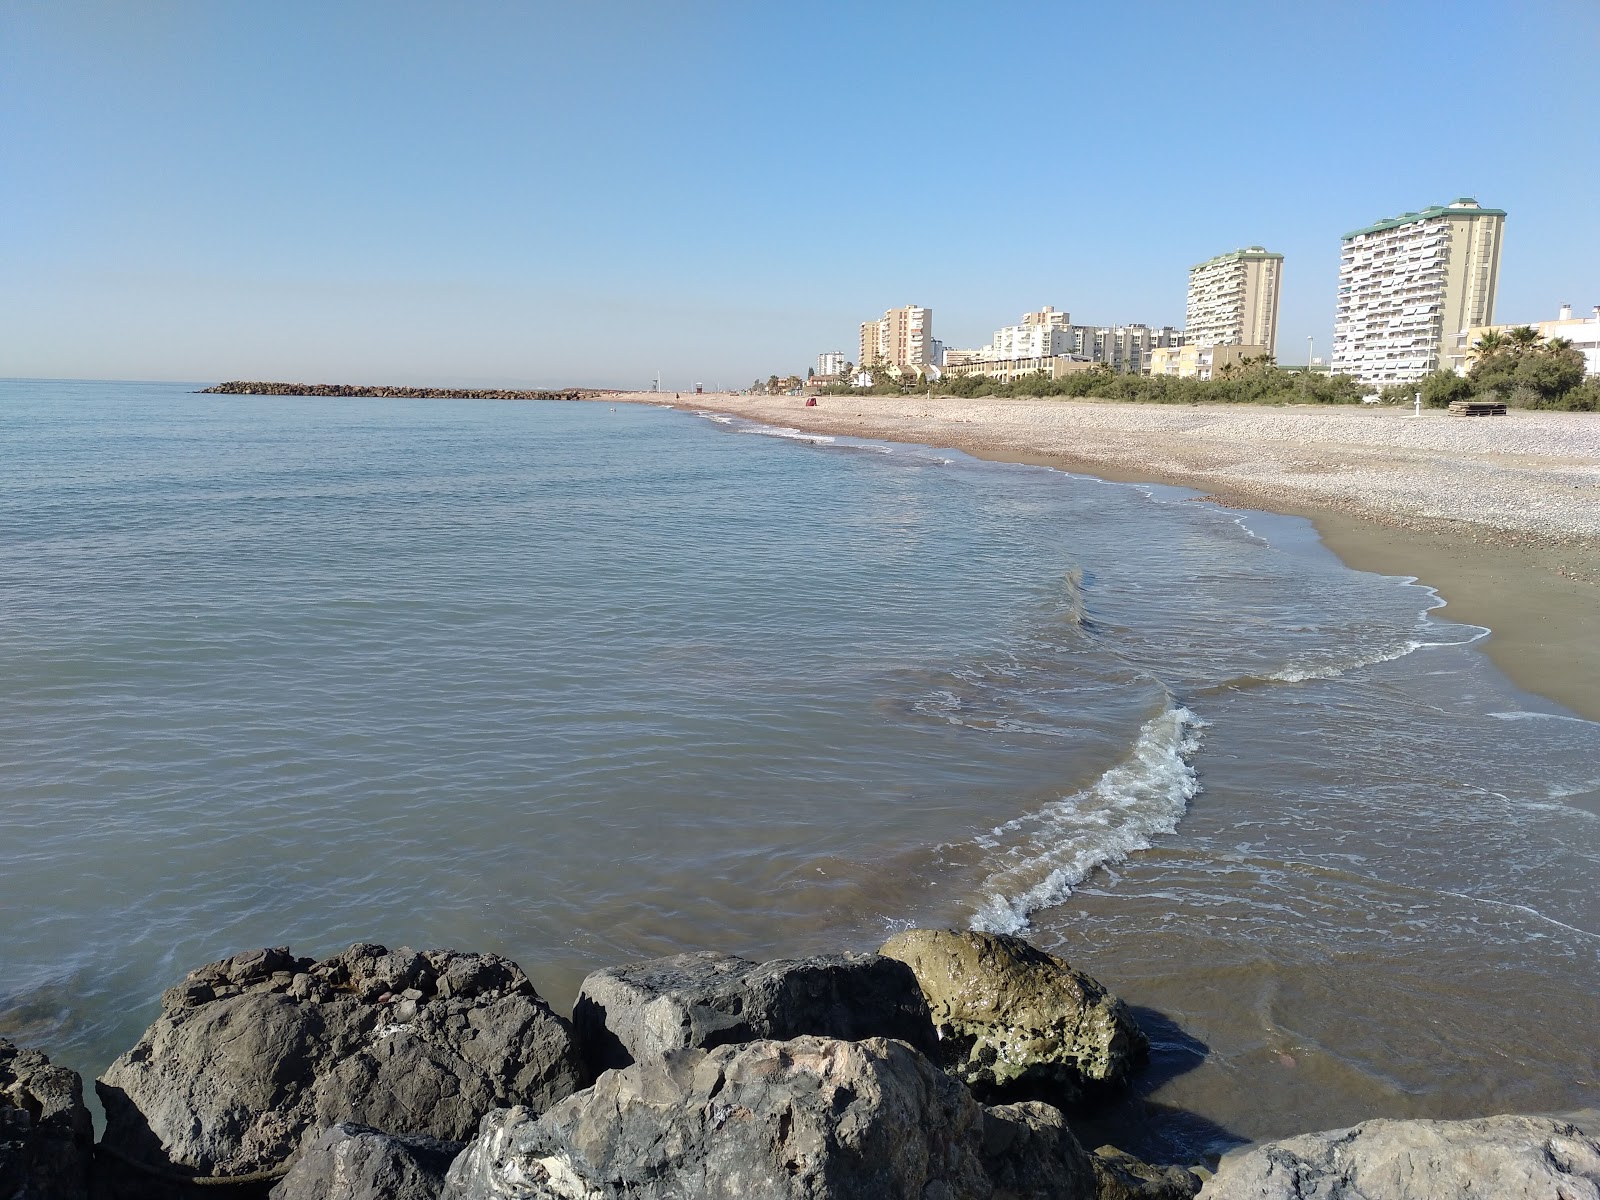 Puig Plajı'in fotoğrafı siyah kum ve çakıl yüzey ile